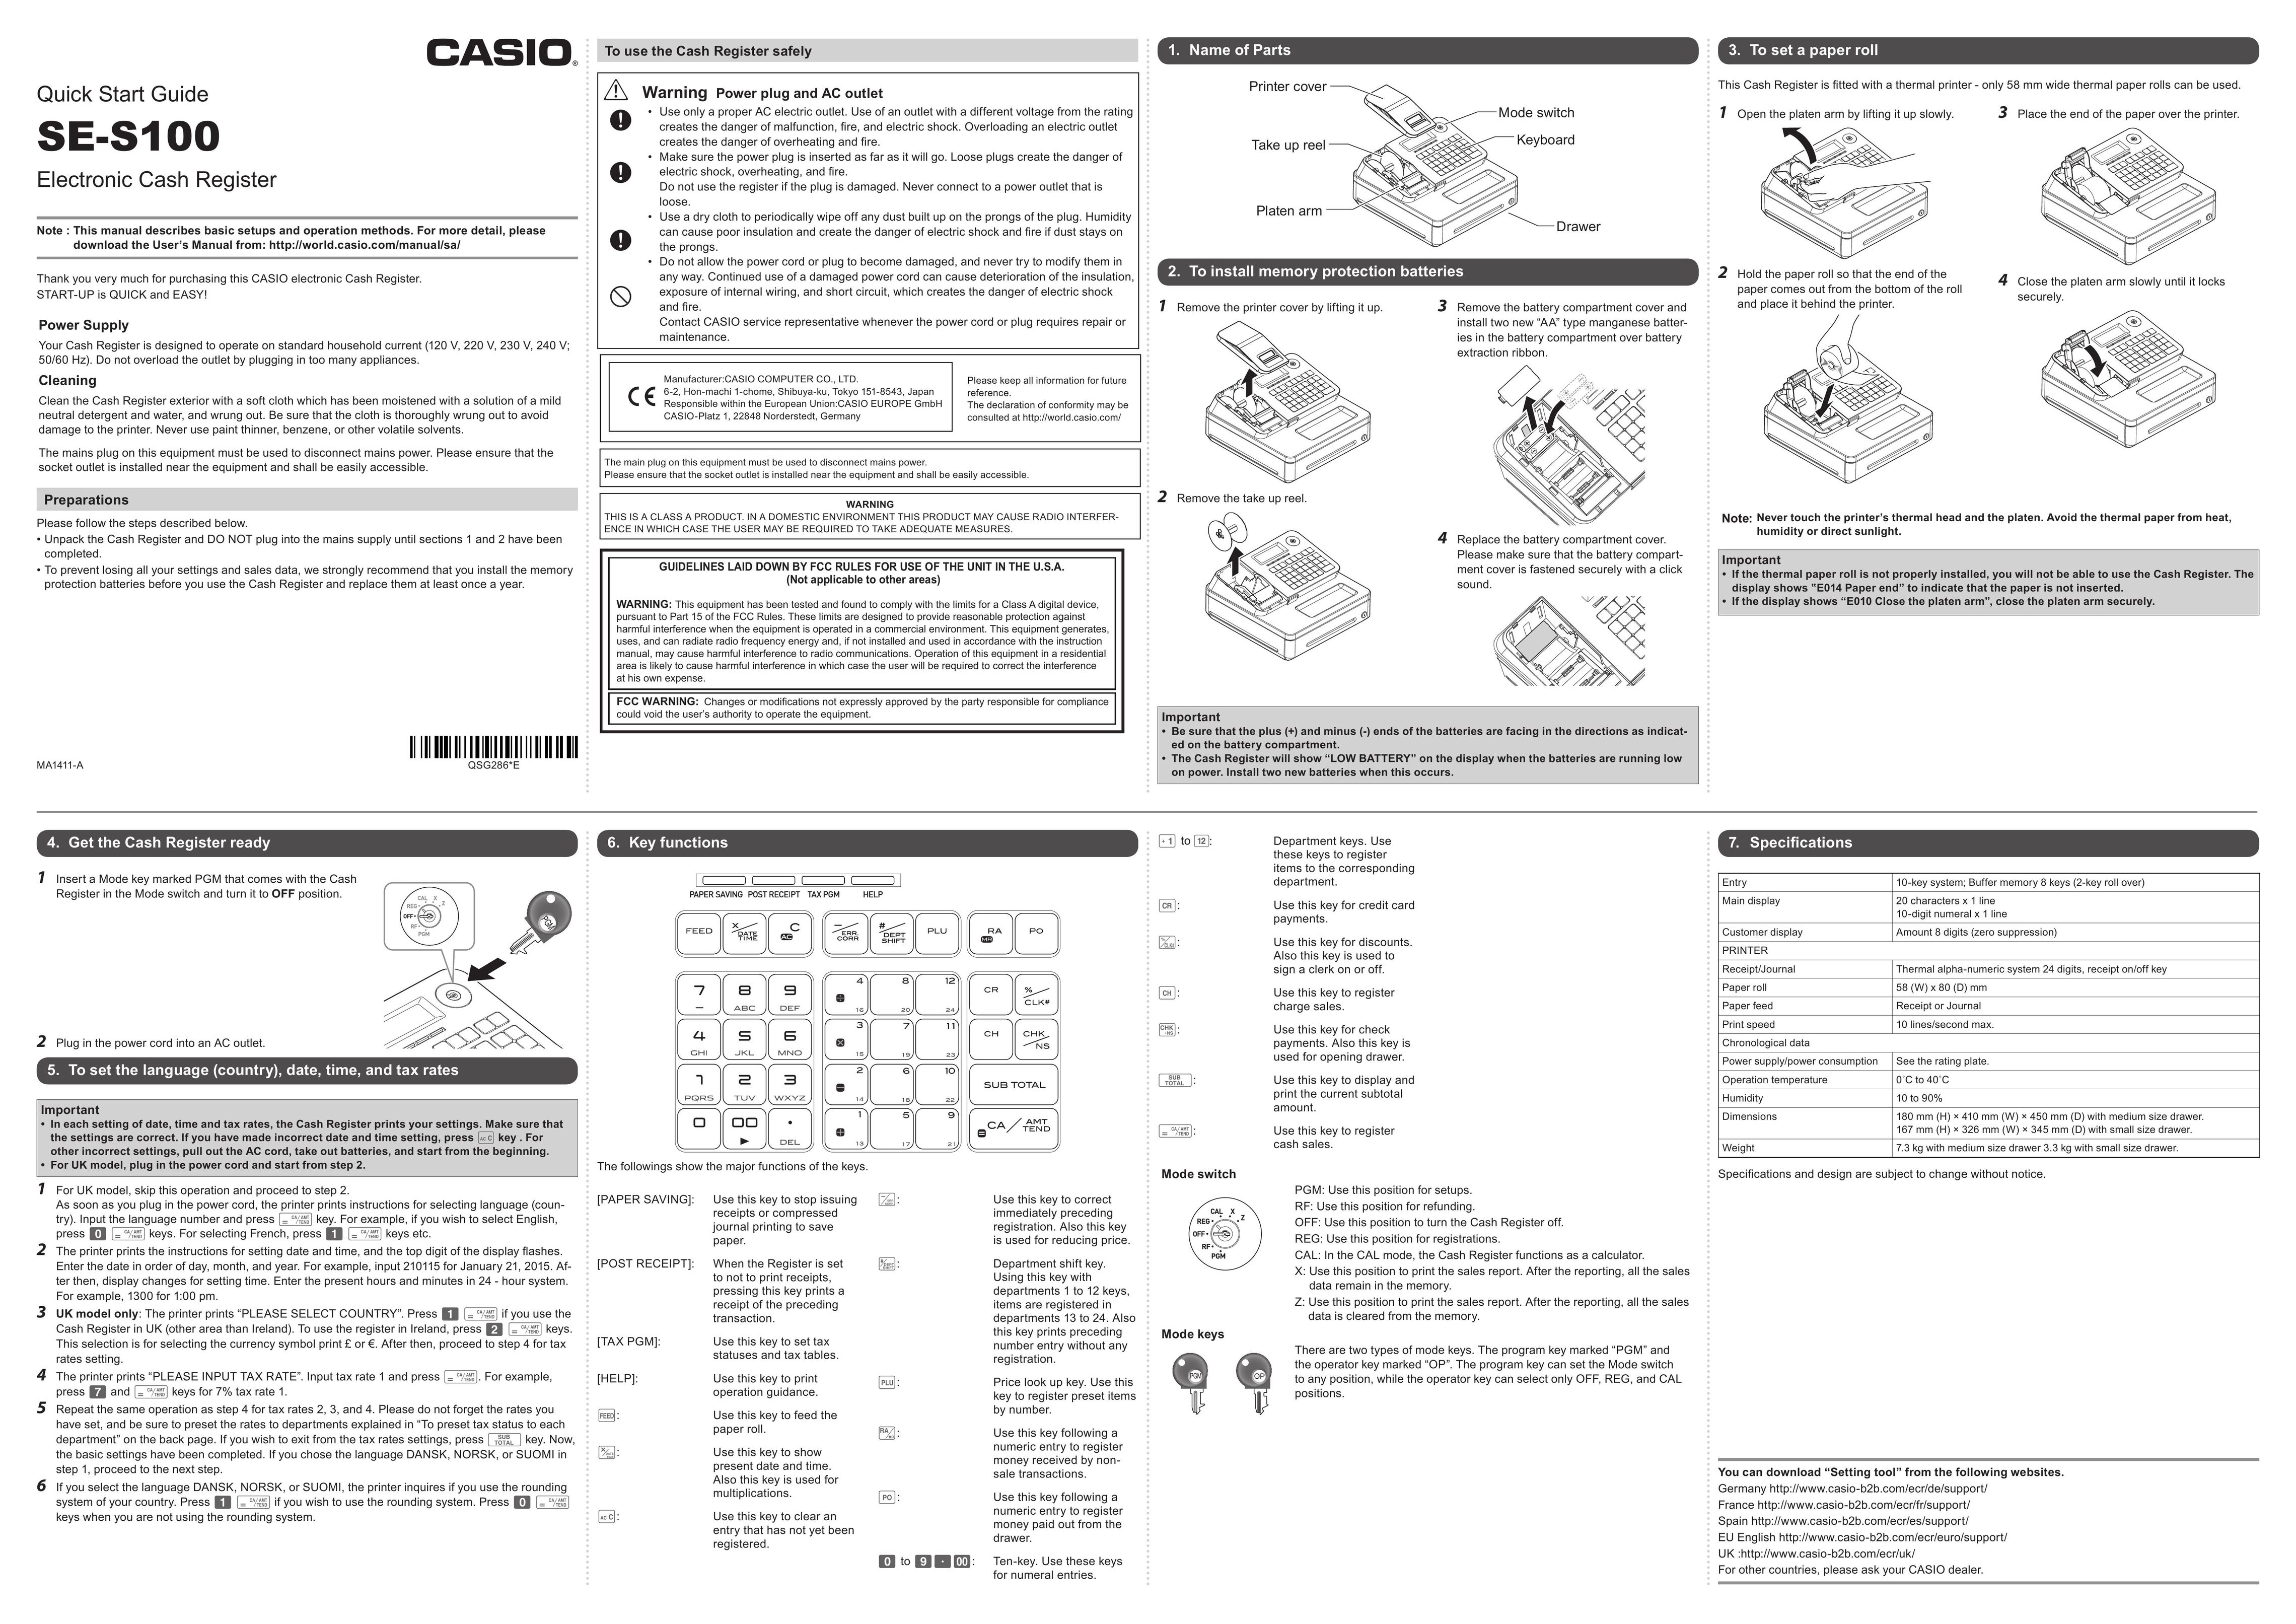 Casio SE-S100 Cash Register User Manual